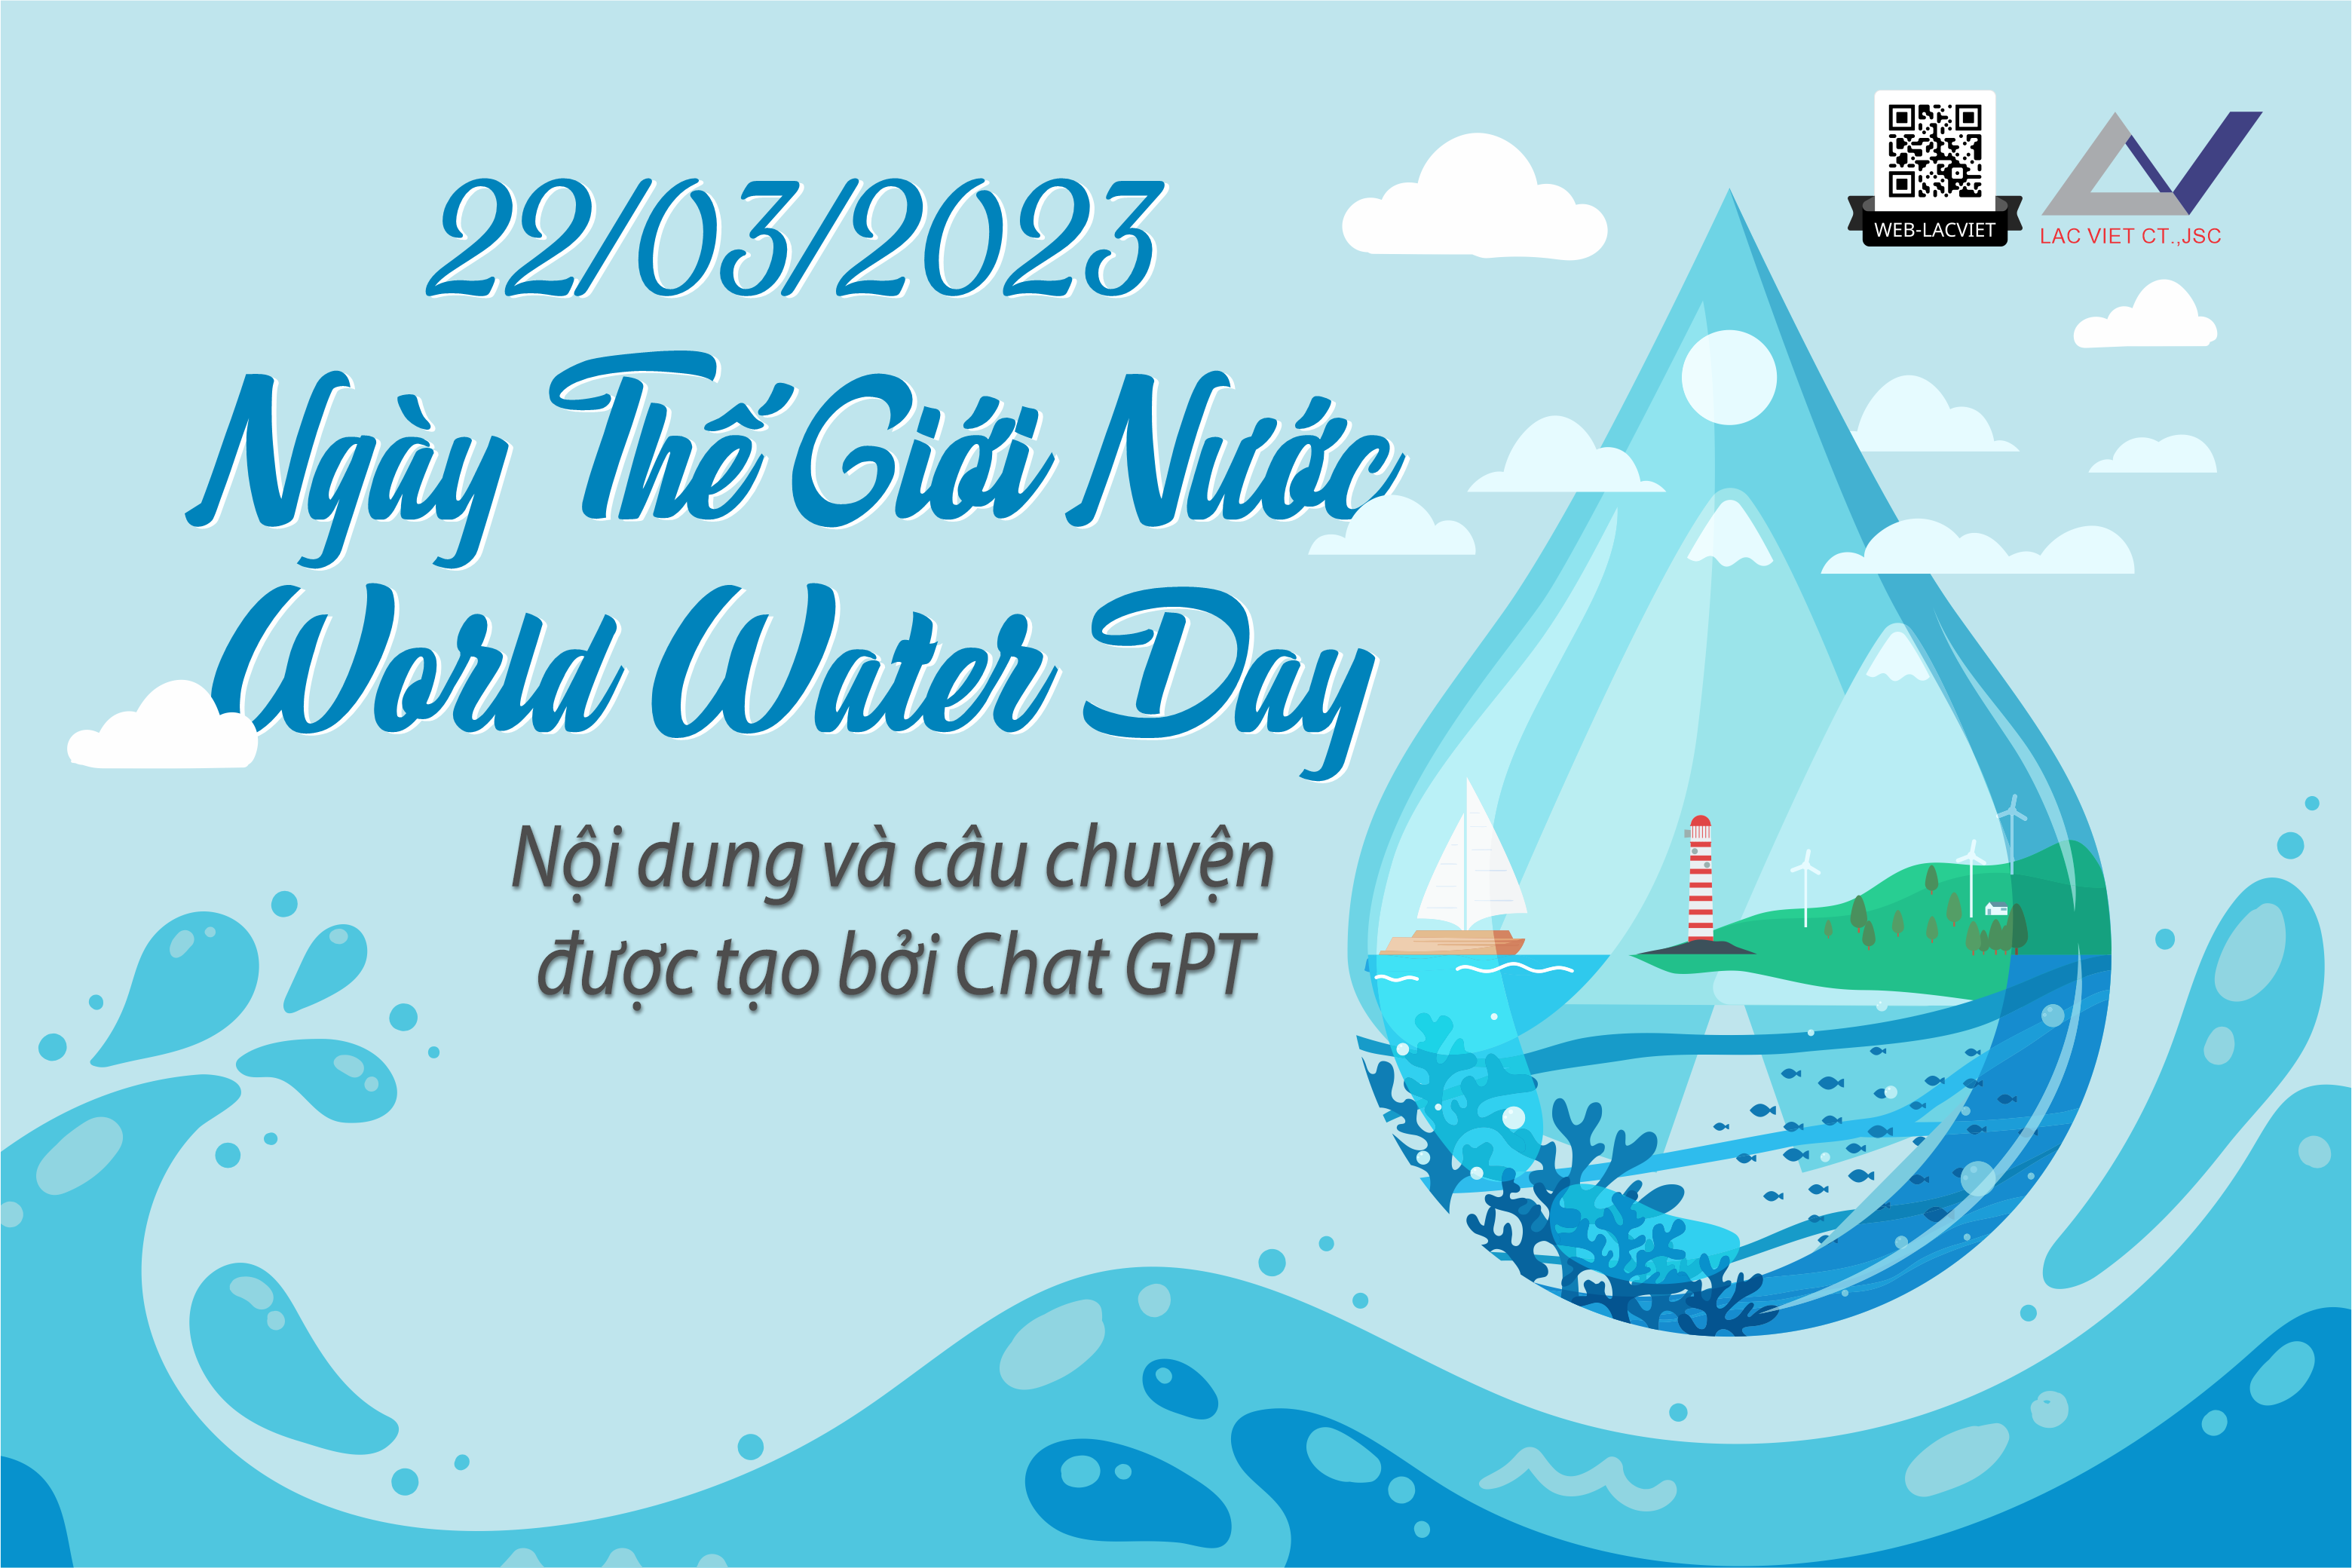 Chào mừng Ngày Thế giới Nước 22/03/2023 | World water day